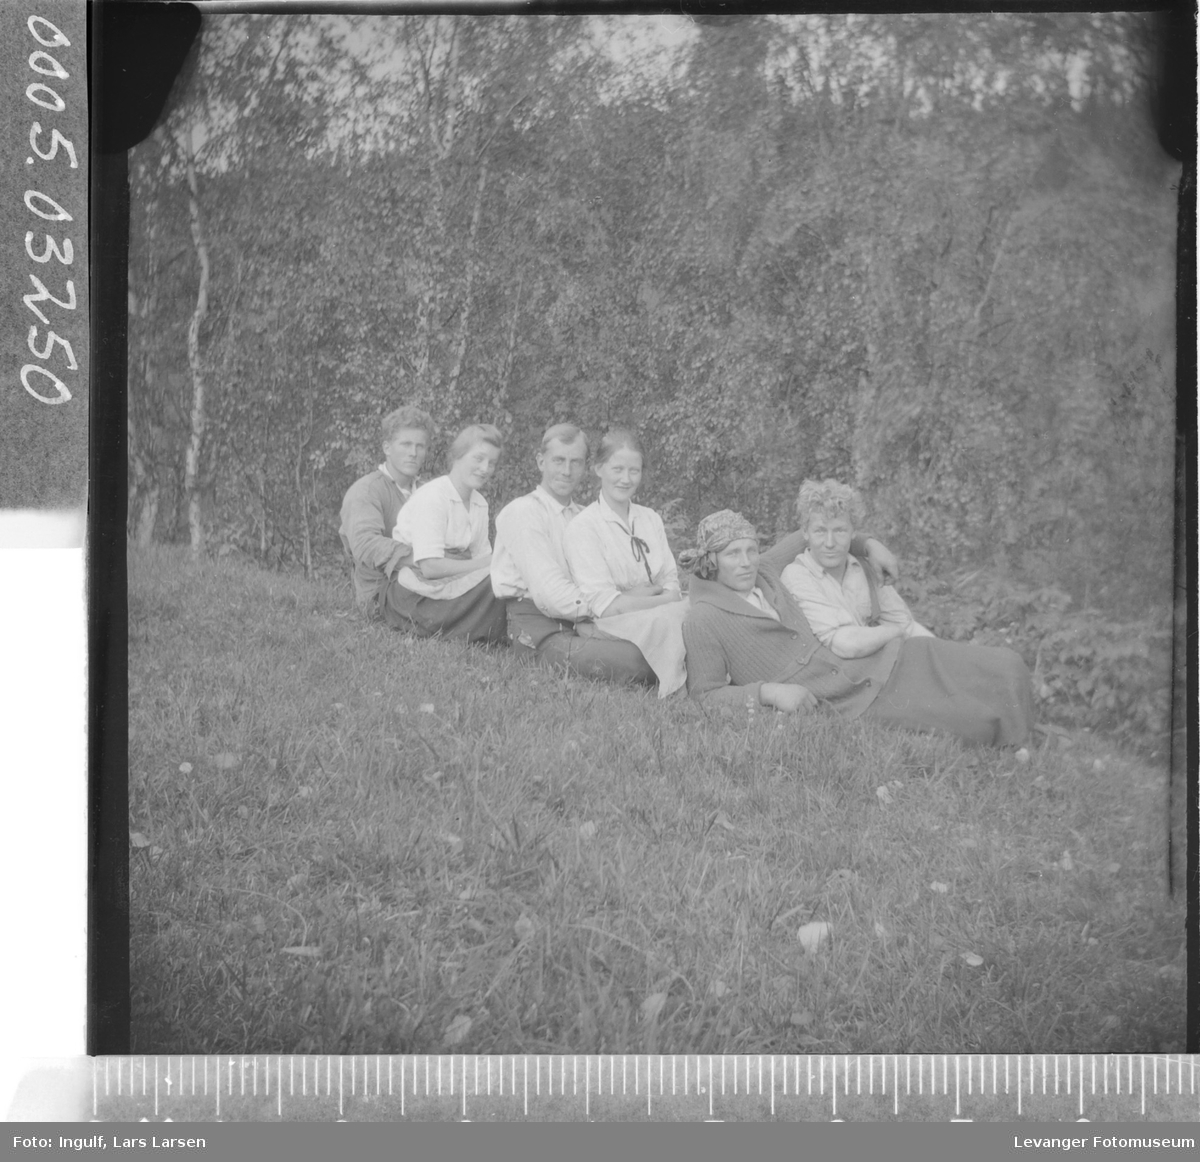 Gruppebilde av fire menn og to kvinner som sitter i gresset, hvorav en mann er utkledd som kvinne.